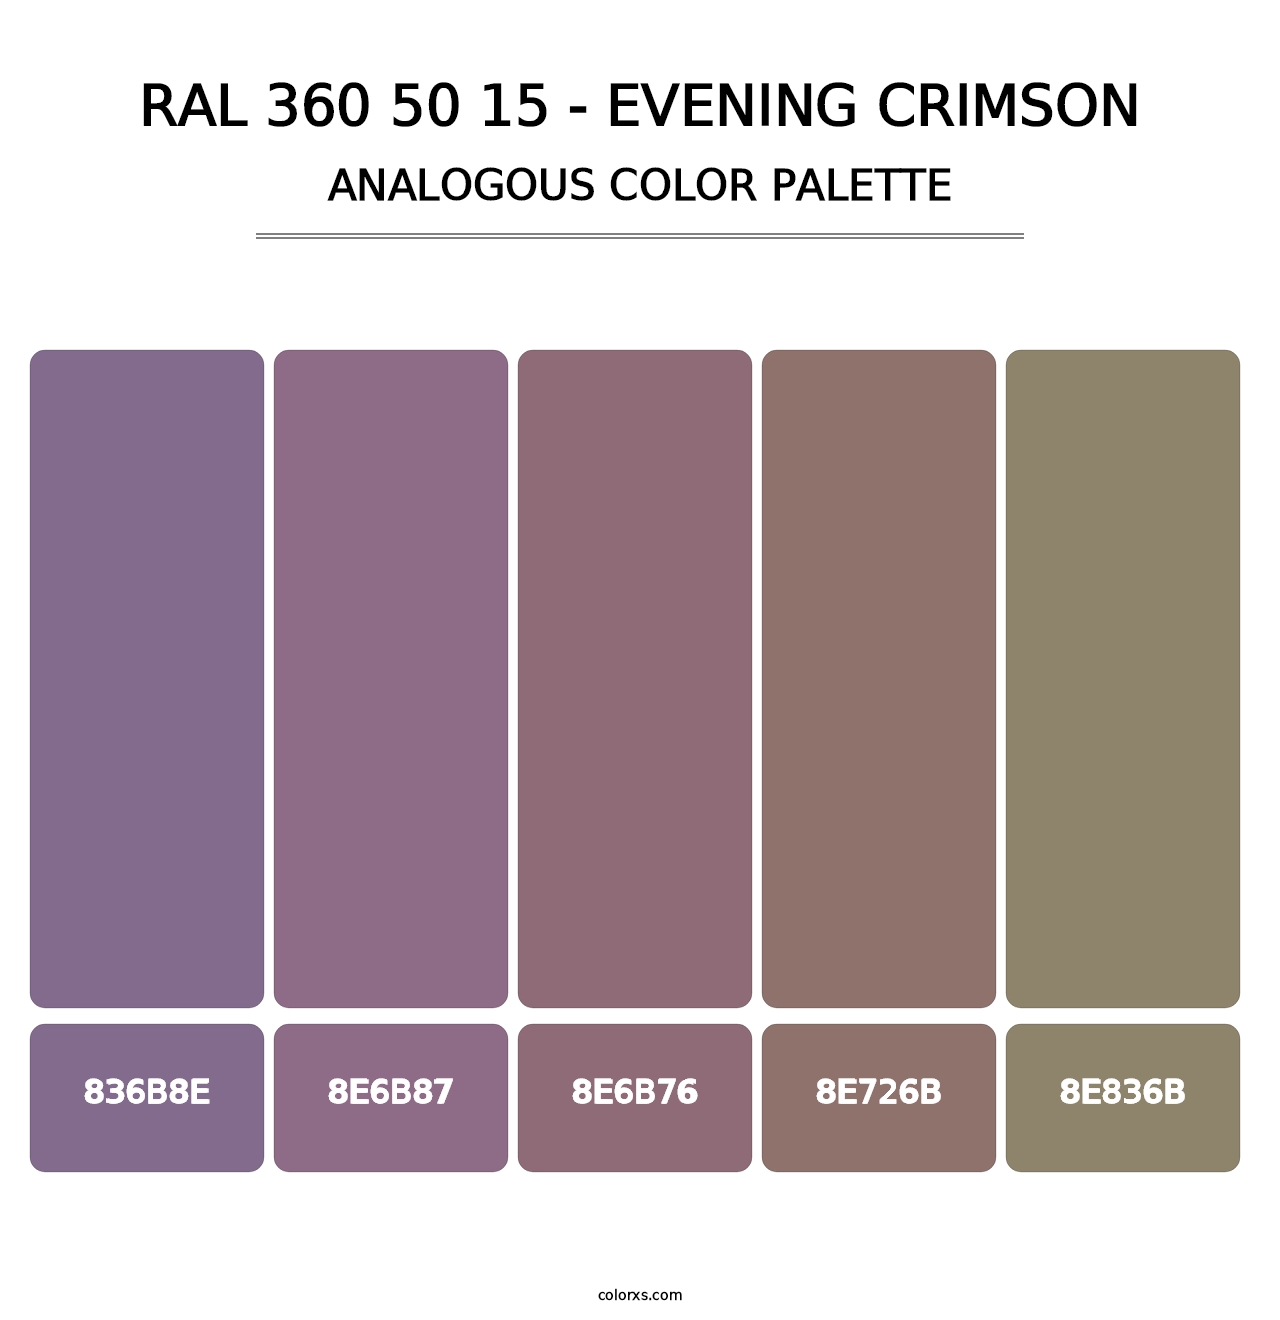 RAL 360 50 15 - Evening Crimson - Analogous Color Palette